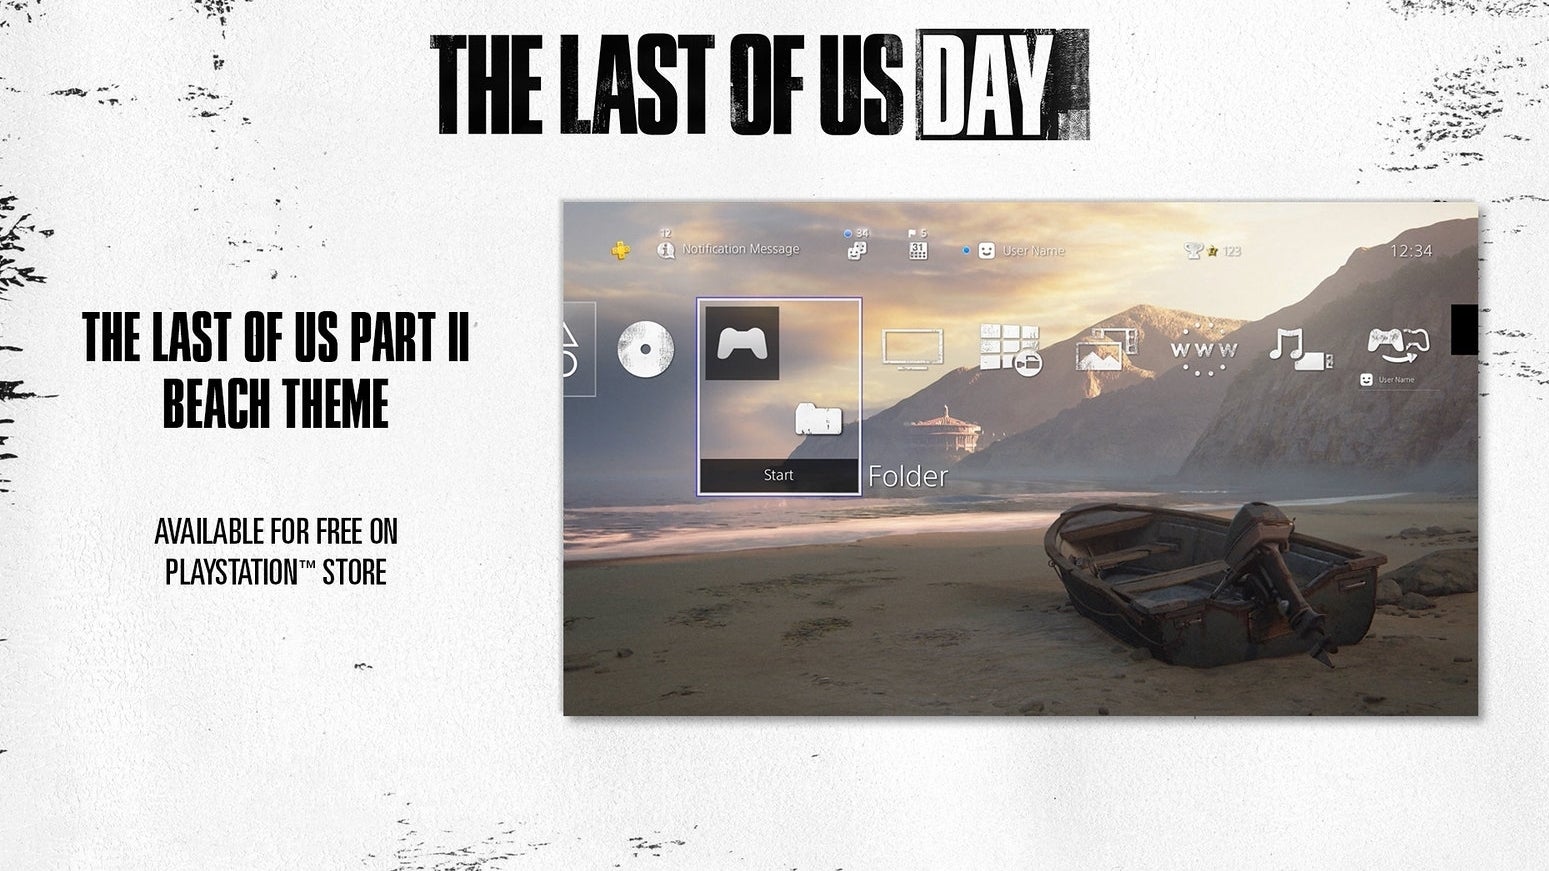 Imagem para Celebra o The Last of Us Day com novo tema gratuito da PS4